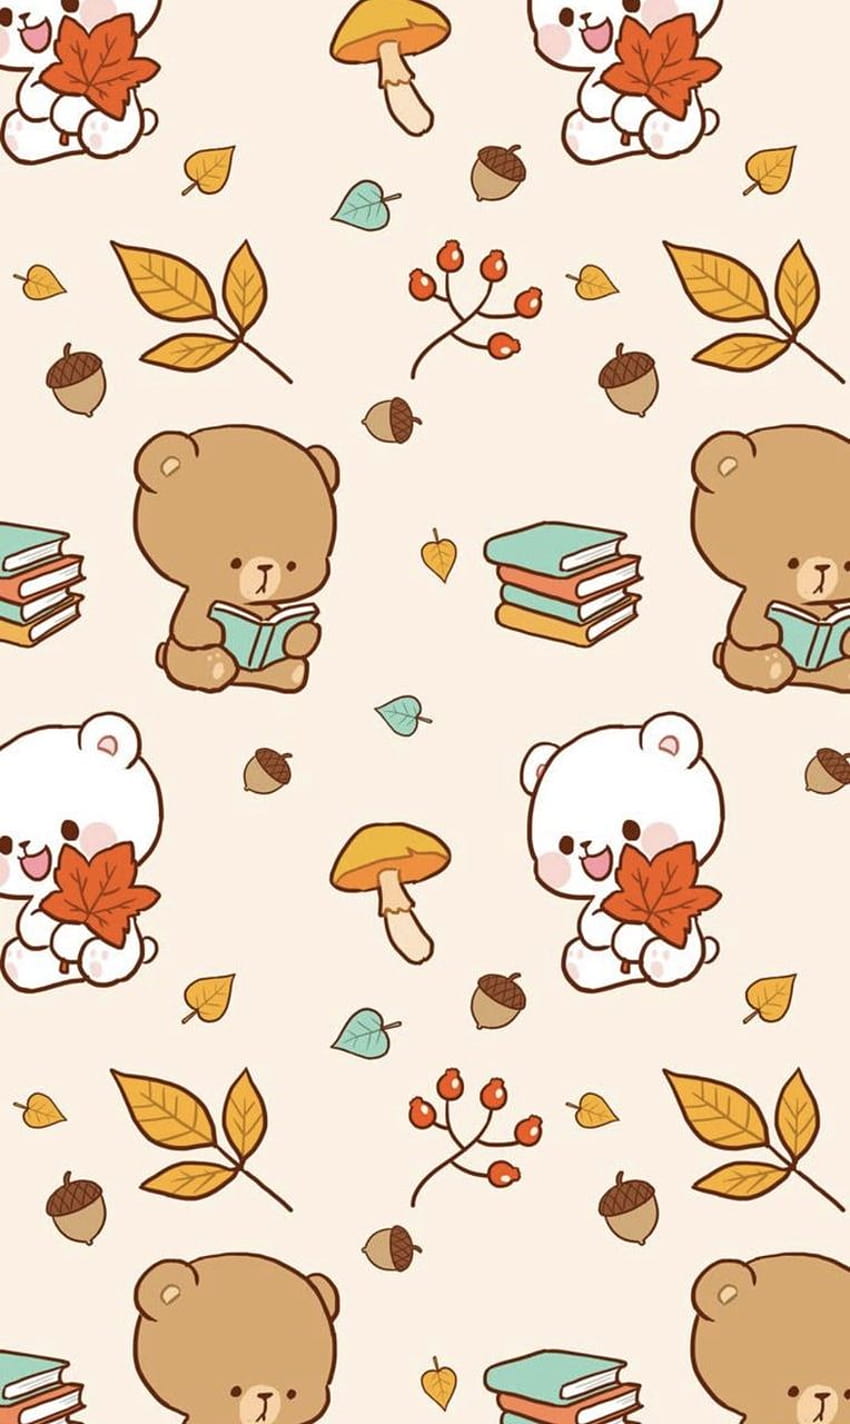 Webtoon: Milk & Mocha, Jessica Thang tarafından paylaşıldı, milk mocha bear mobile HD telefon duvar kağıdı